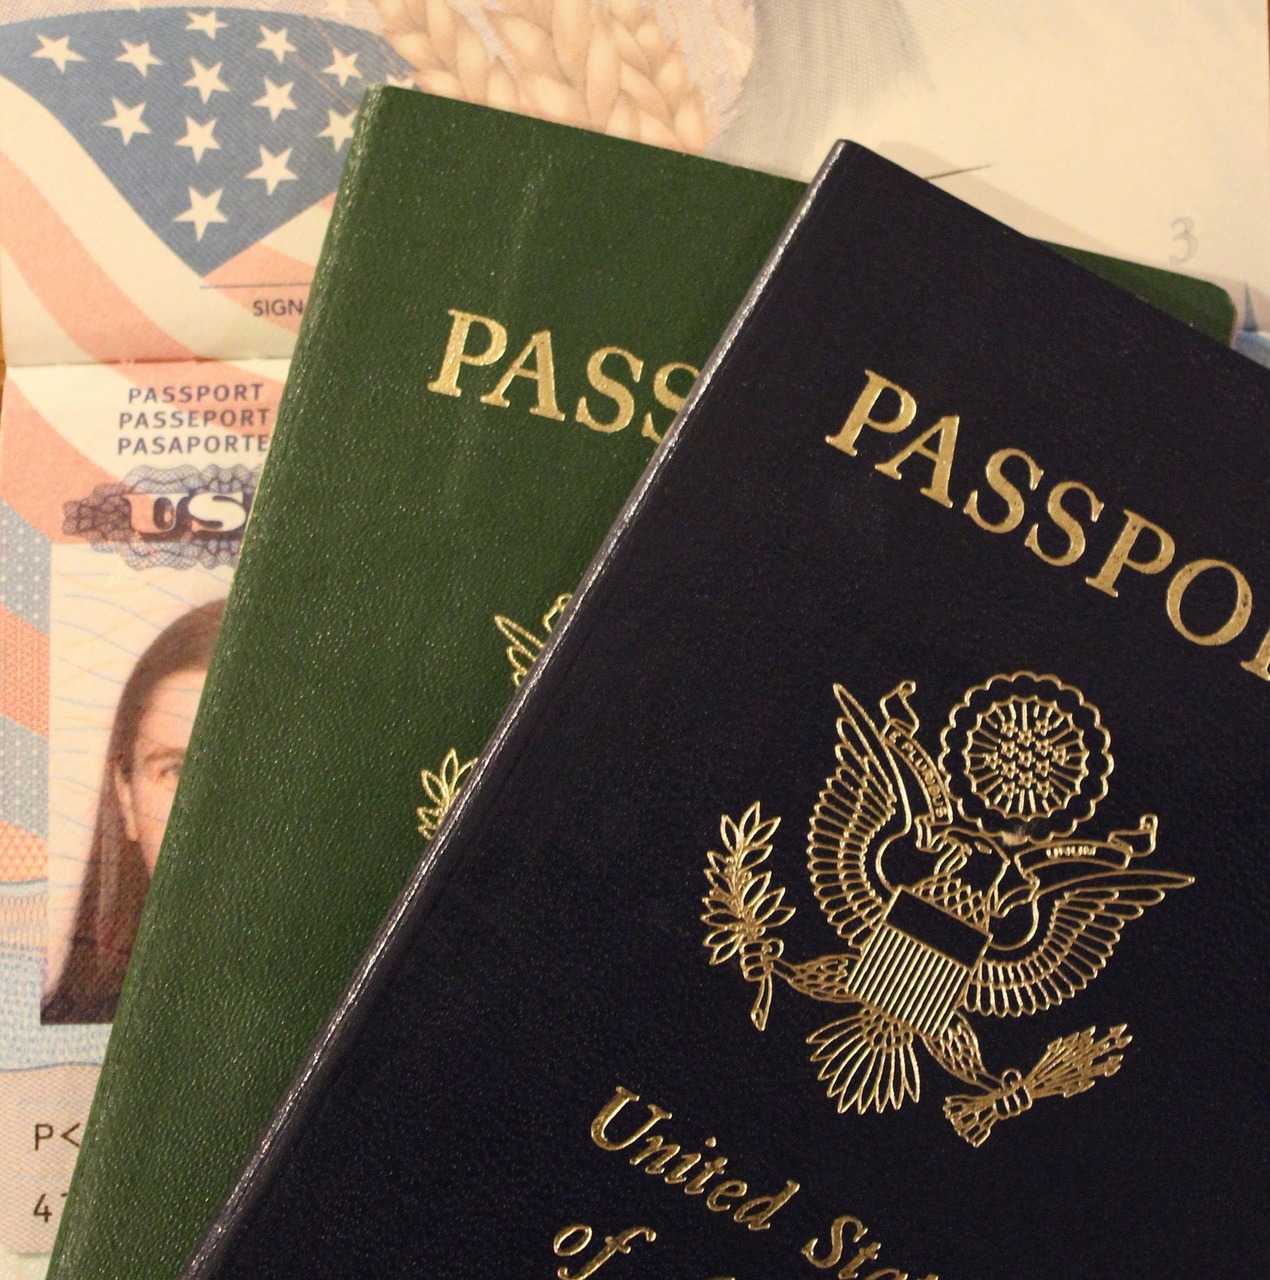 אל תבזבזו זמן: כל הסיבות להוציא דרכון פורטוגלי עוד היום